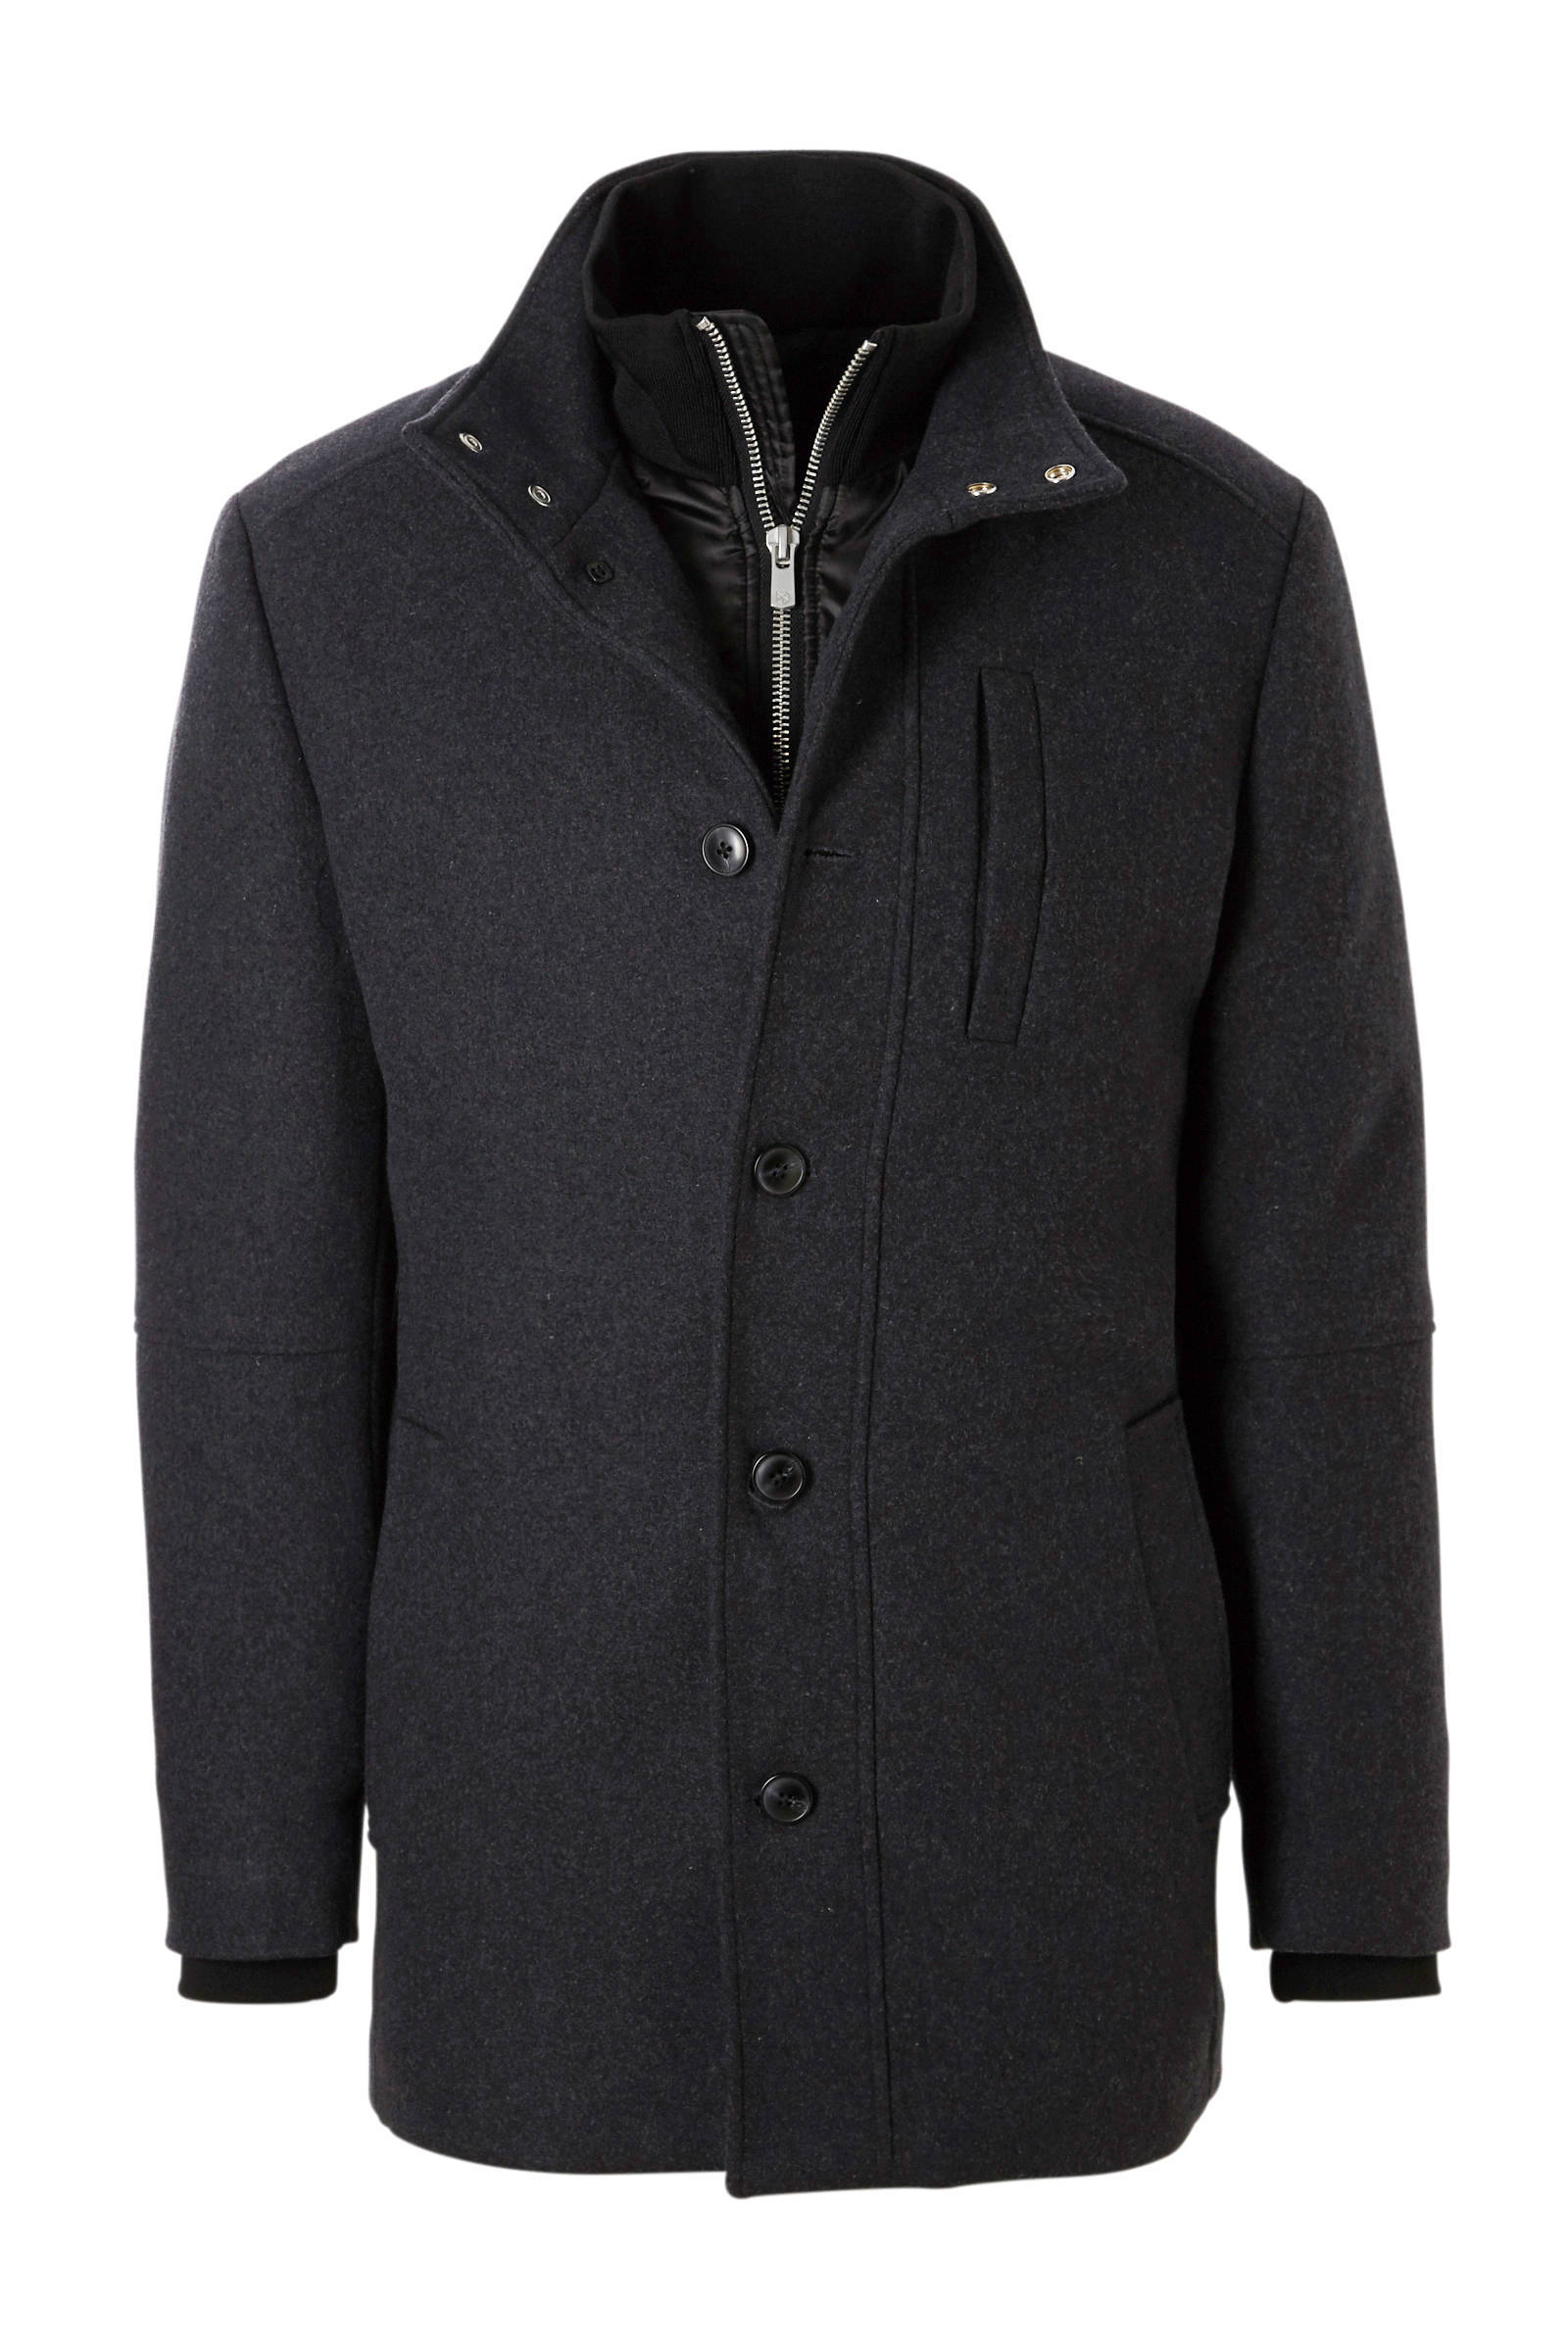 Jack & Jones Duane wool jacket Winter Jassen Zwart online kopen